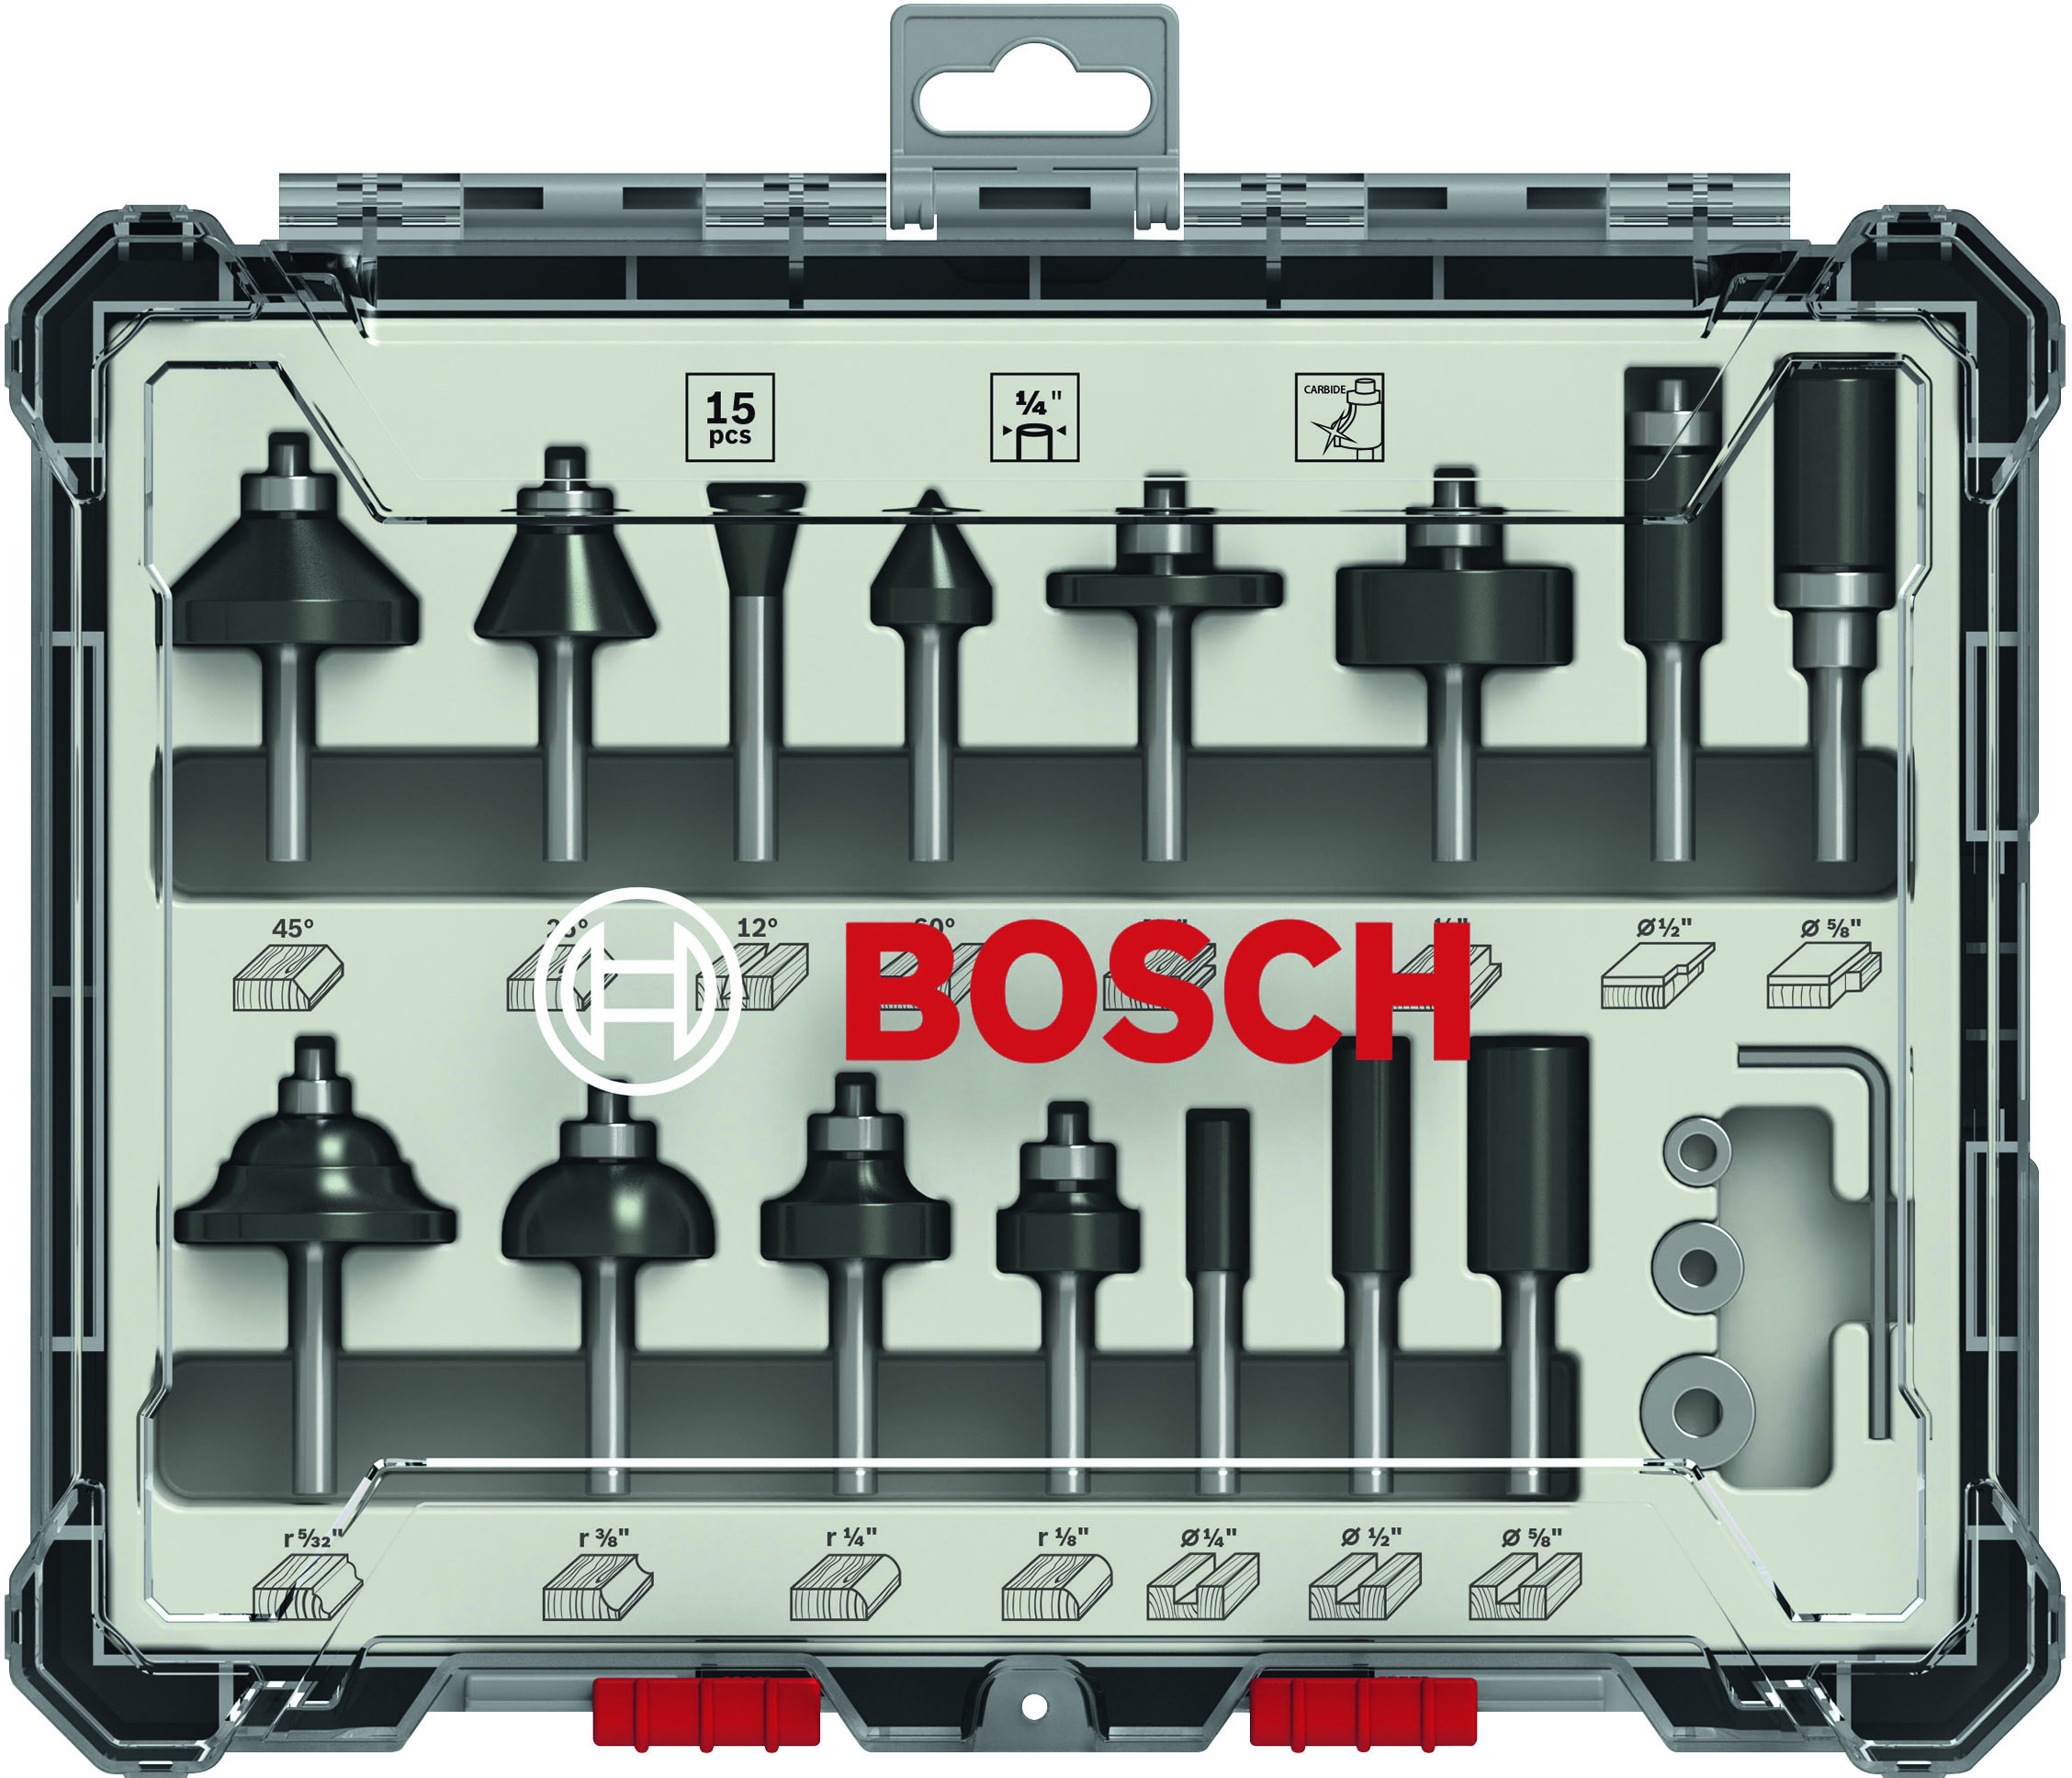 Bosch 1/4" Mixed Router Bit Set (15pcs)